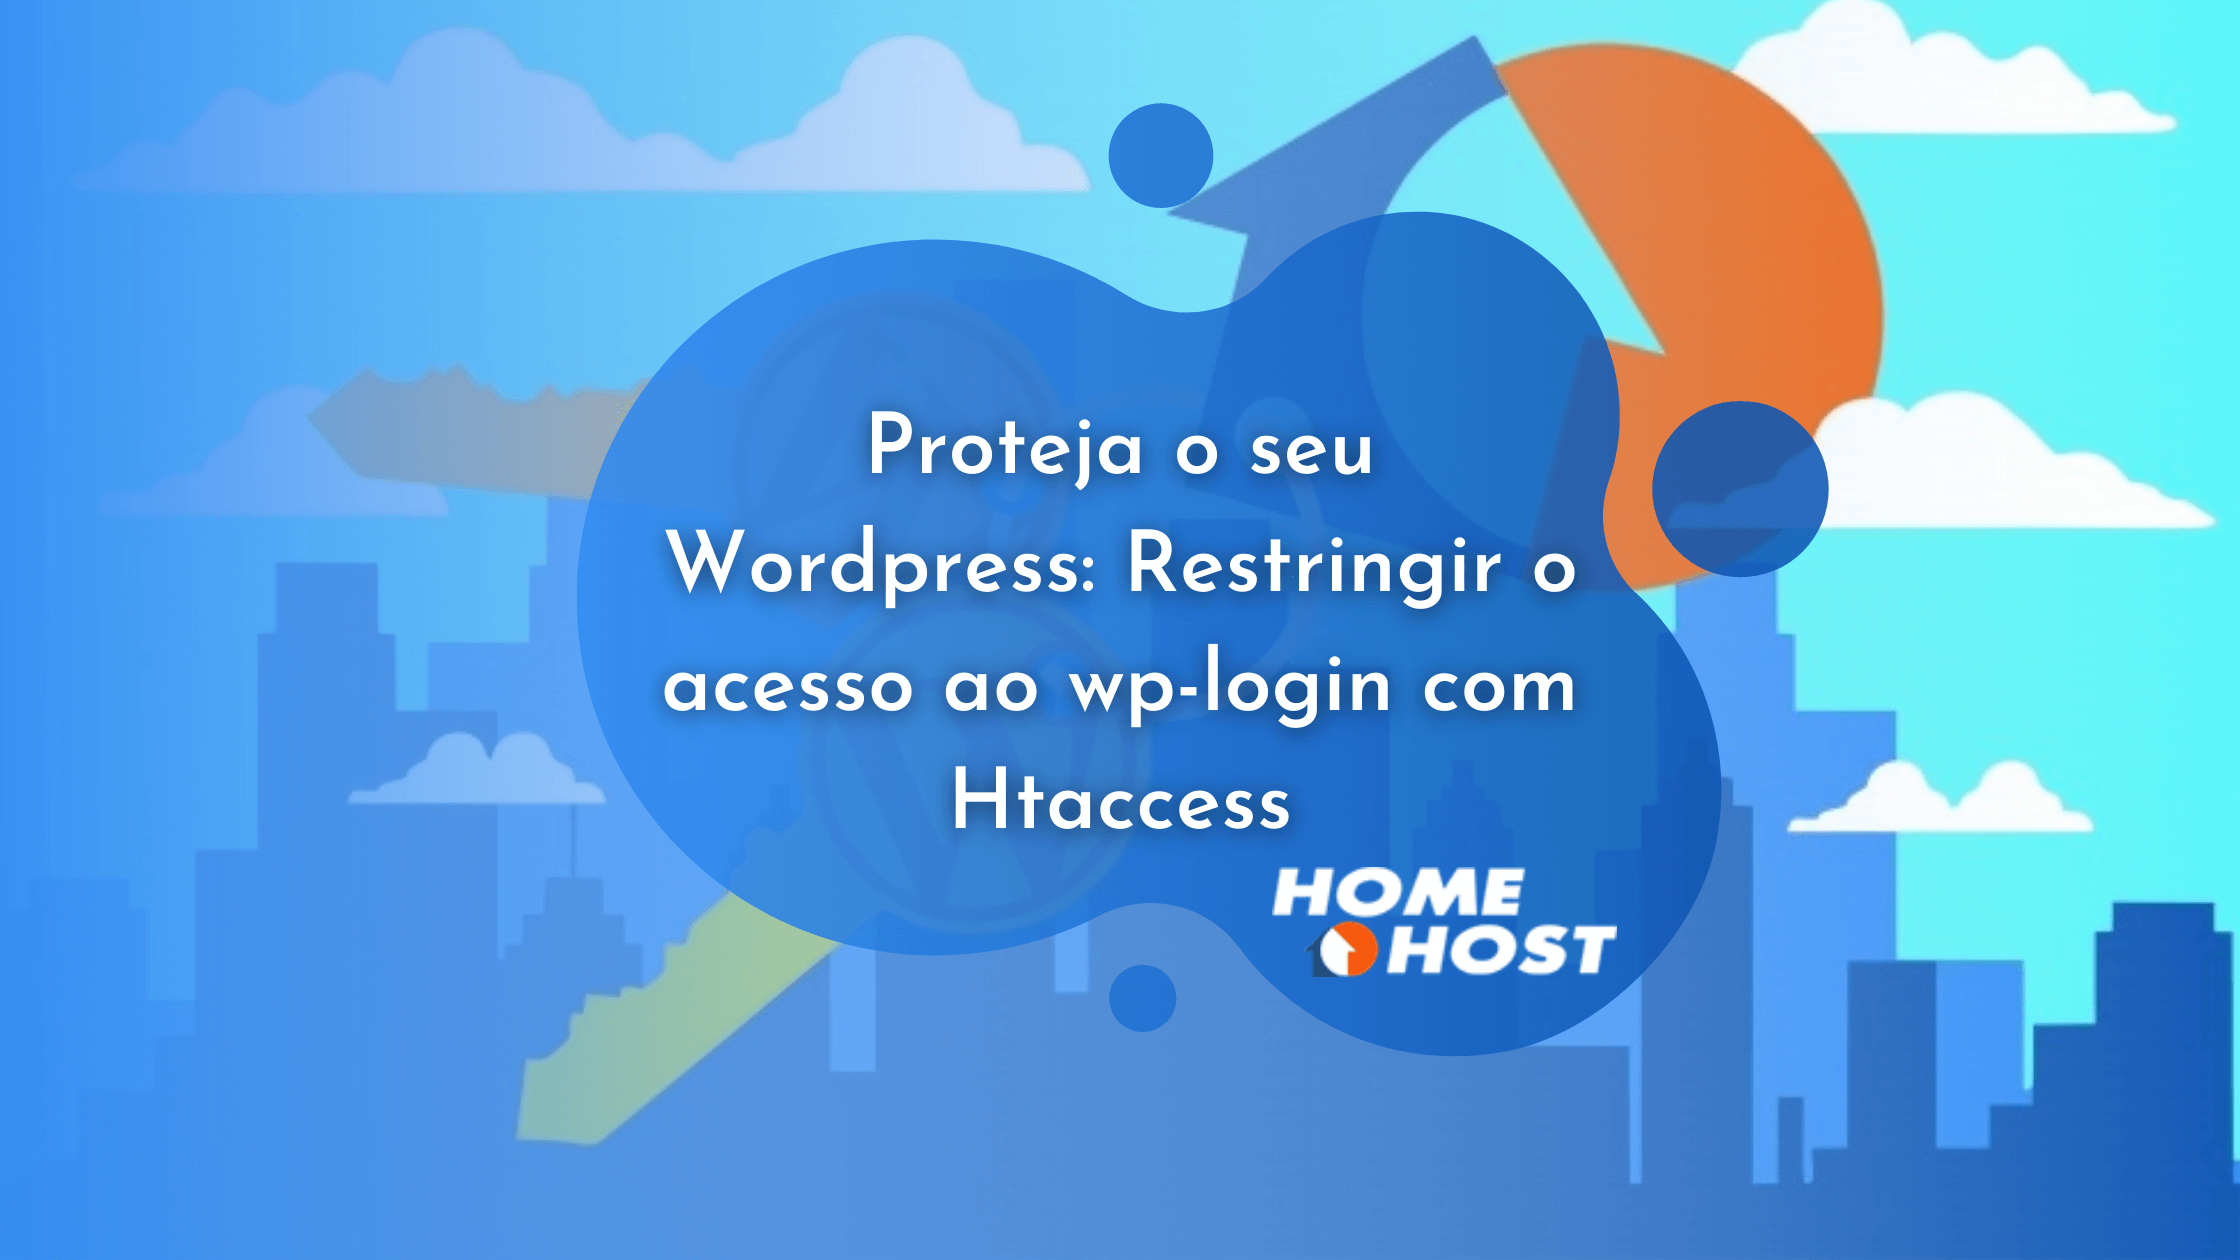 Proteja o seu Wordpress Restringir o acesso ao wp-login com Htaccess